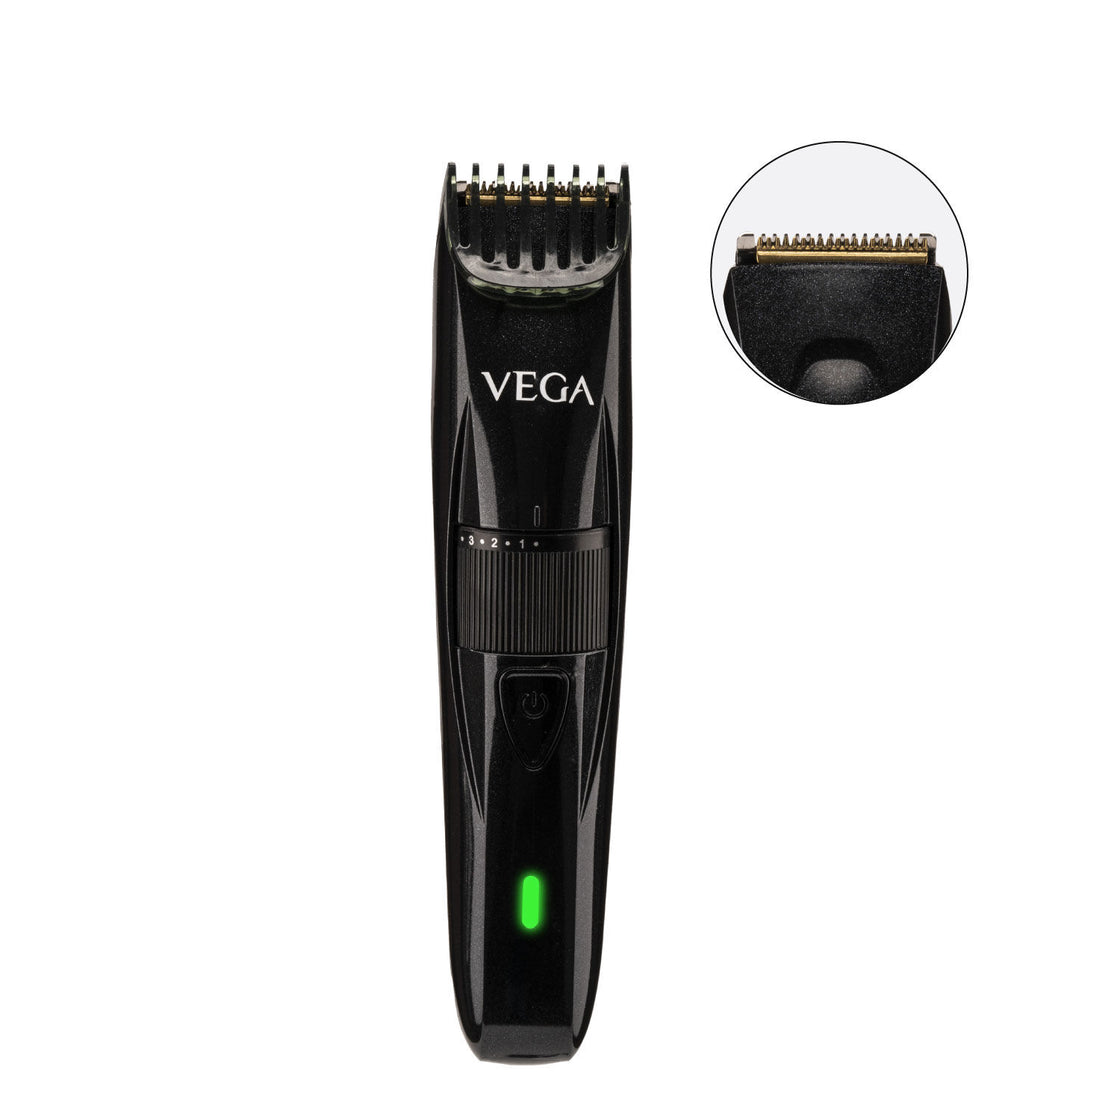 Vega Power Series P-2 Beard Trimmer For Men - Black (Vhth-26)